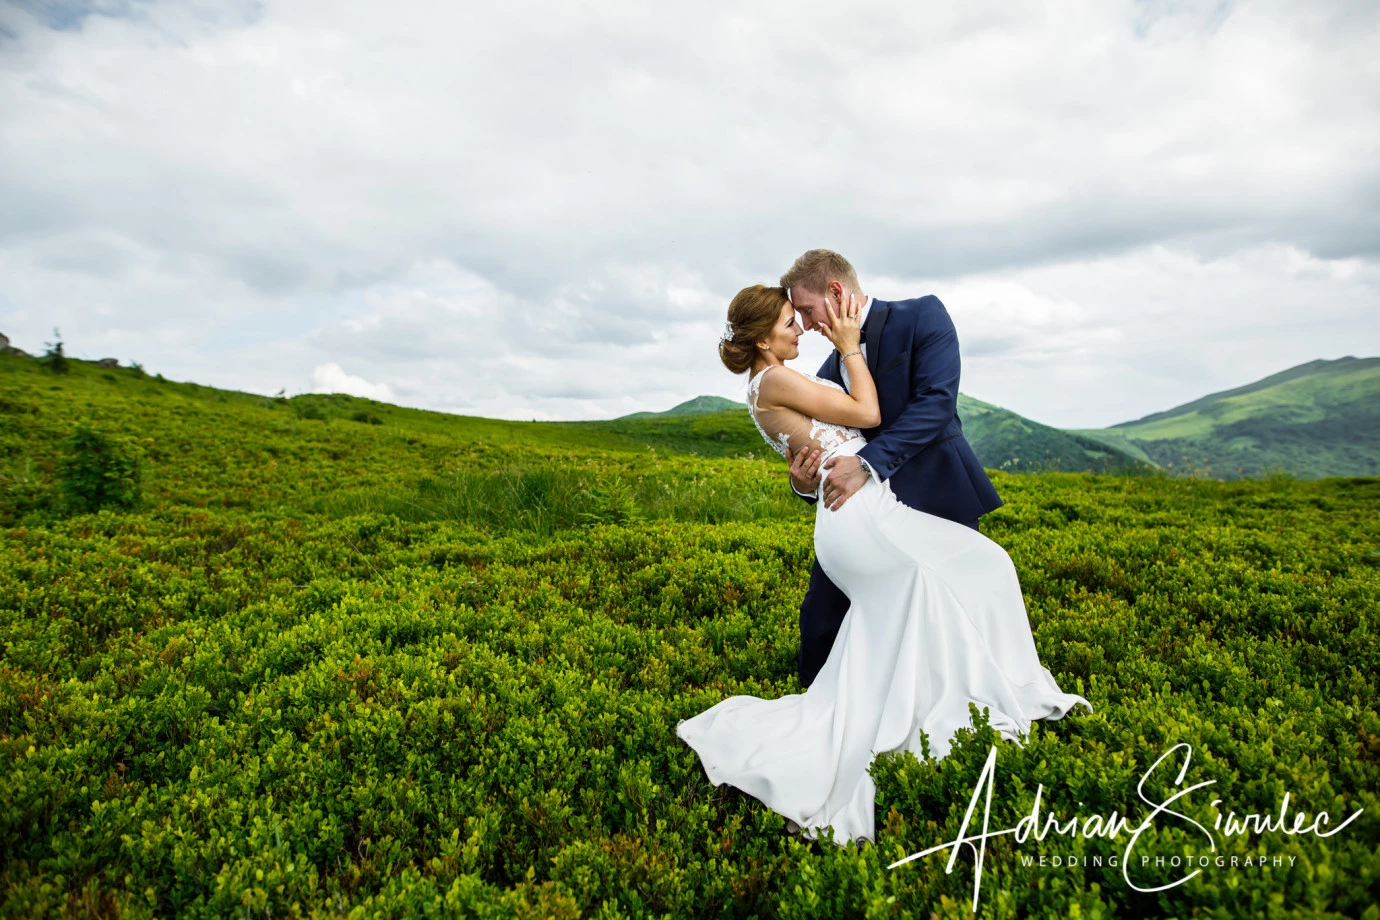 fotograf rzeszow adrian-siwulec-wedding-photography portfolio zdjecia slubne inspiracje wesele plener slubny sesja slubna